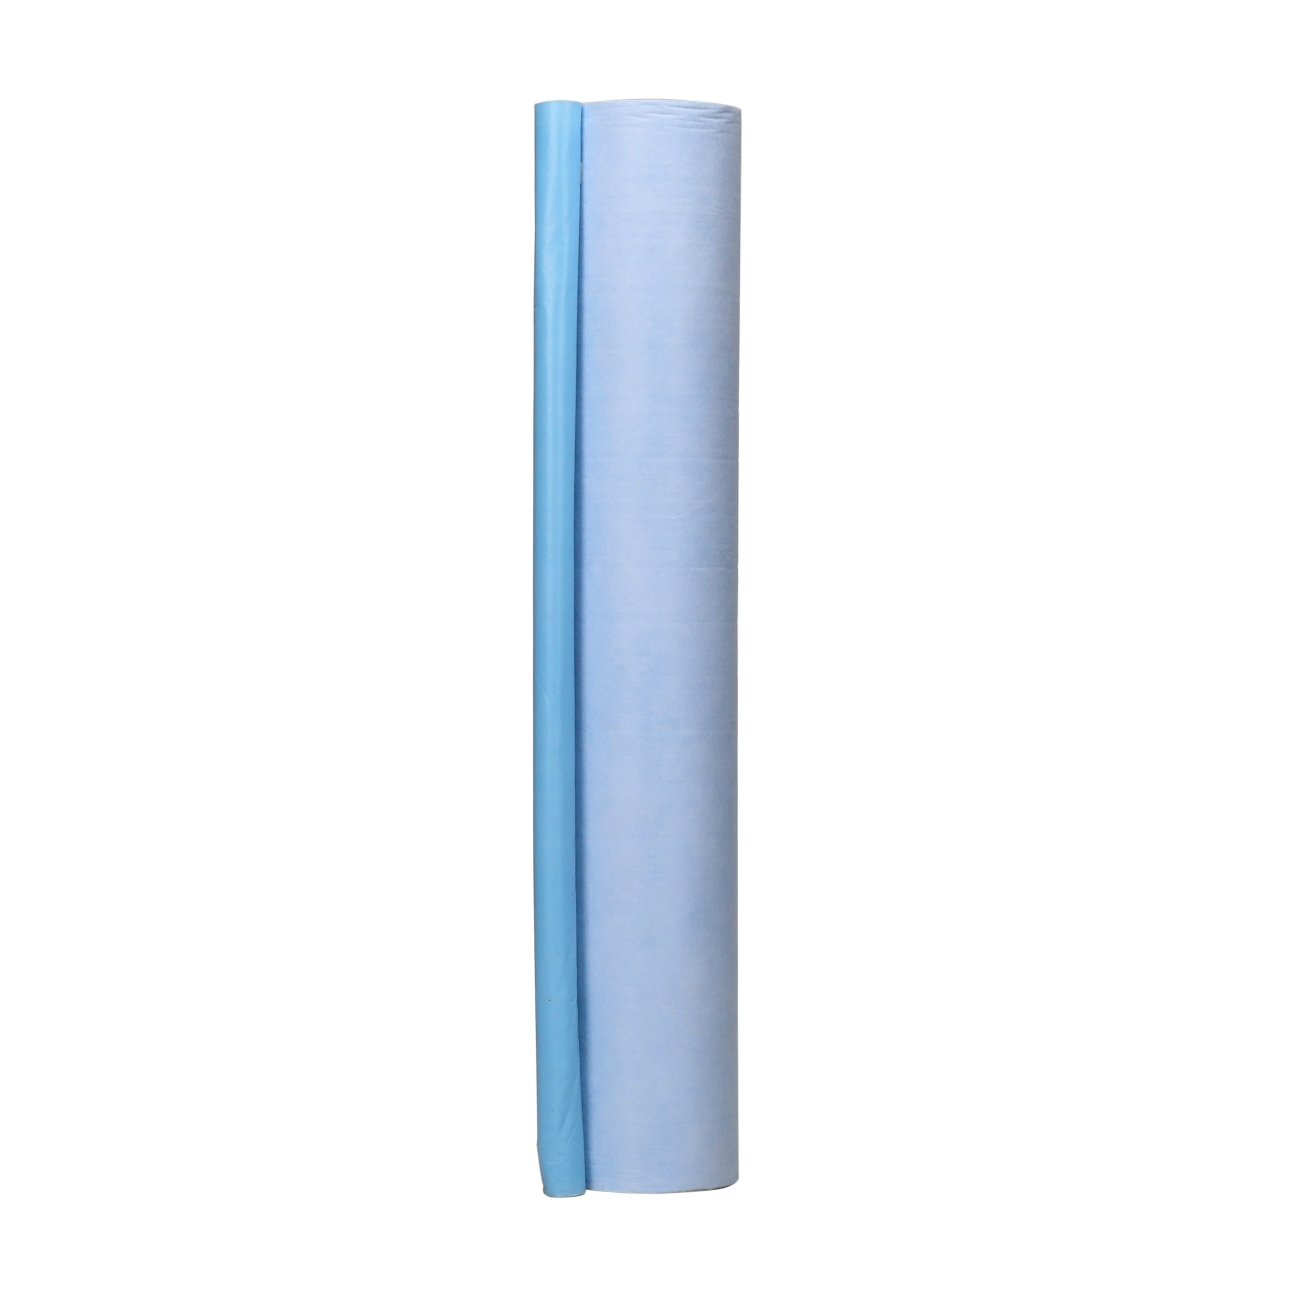 3M Zelfklevende stof voor bescherming tegen vloeistoffen, 1420 mm x 91,5 m, 36882